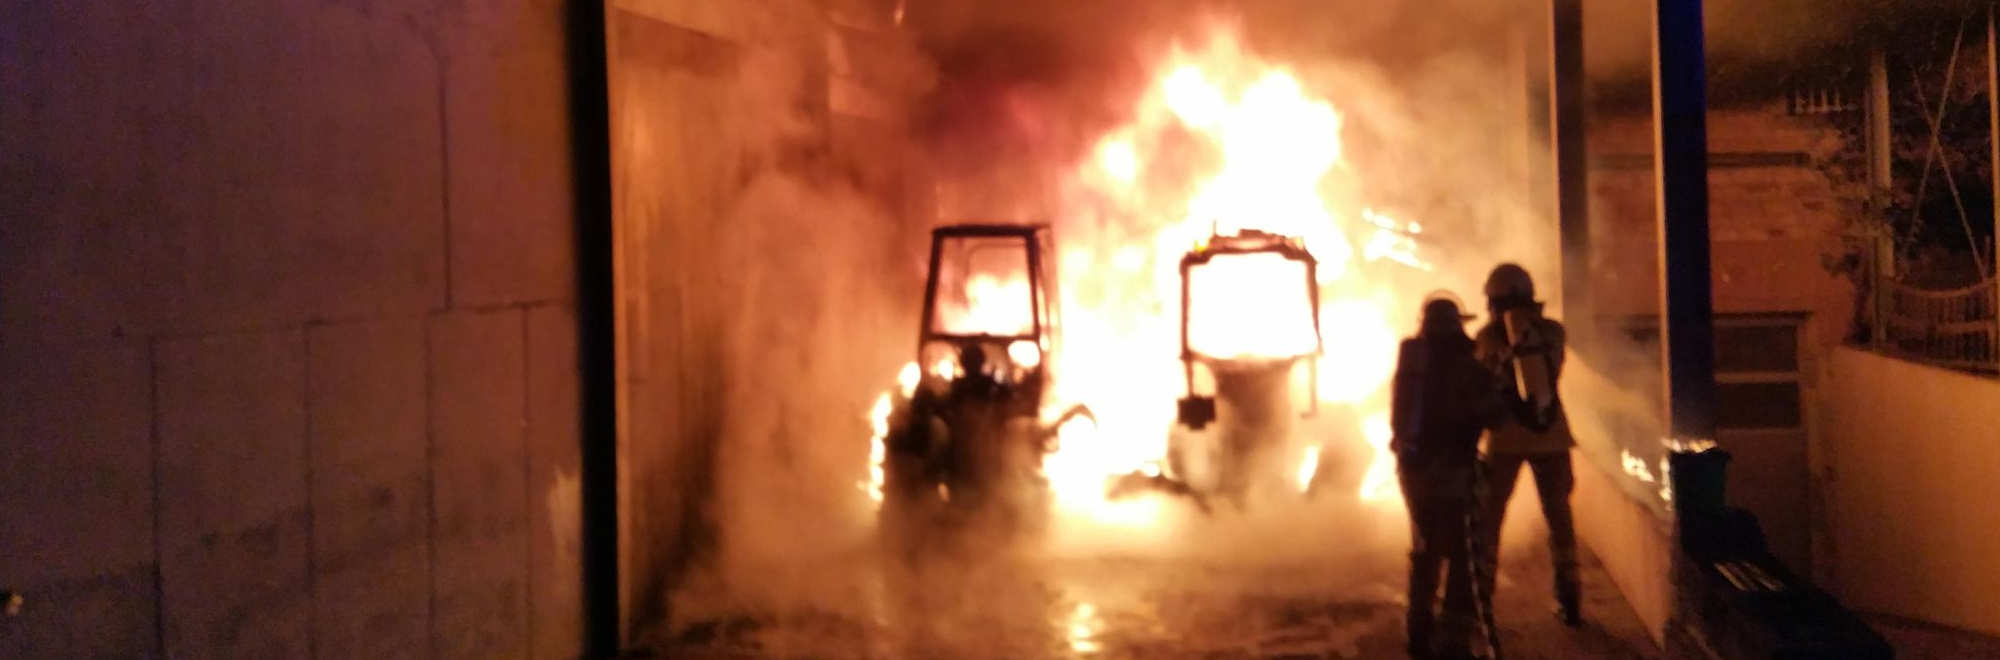 Löscharbeiten der Feuerwehr wegen Traktorbrand